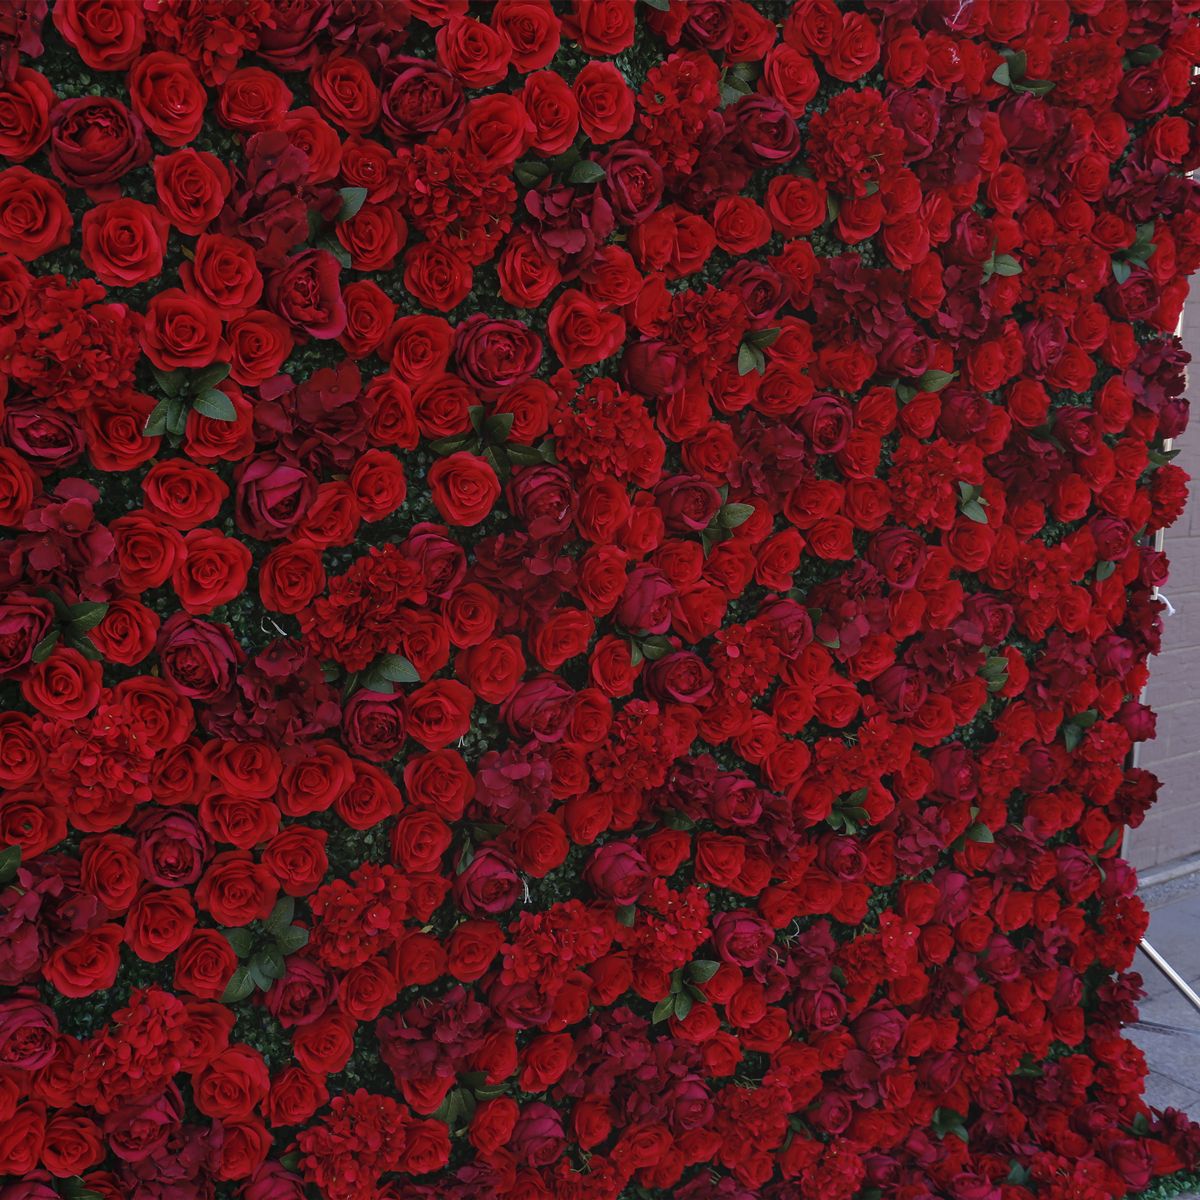 Roter Stoffboden, Simulationsblumenwand, Hintergrundwand, Mailänder Grasboden, Hochzeitsdekoration, Hochzeitsdekoration